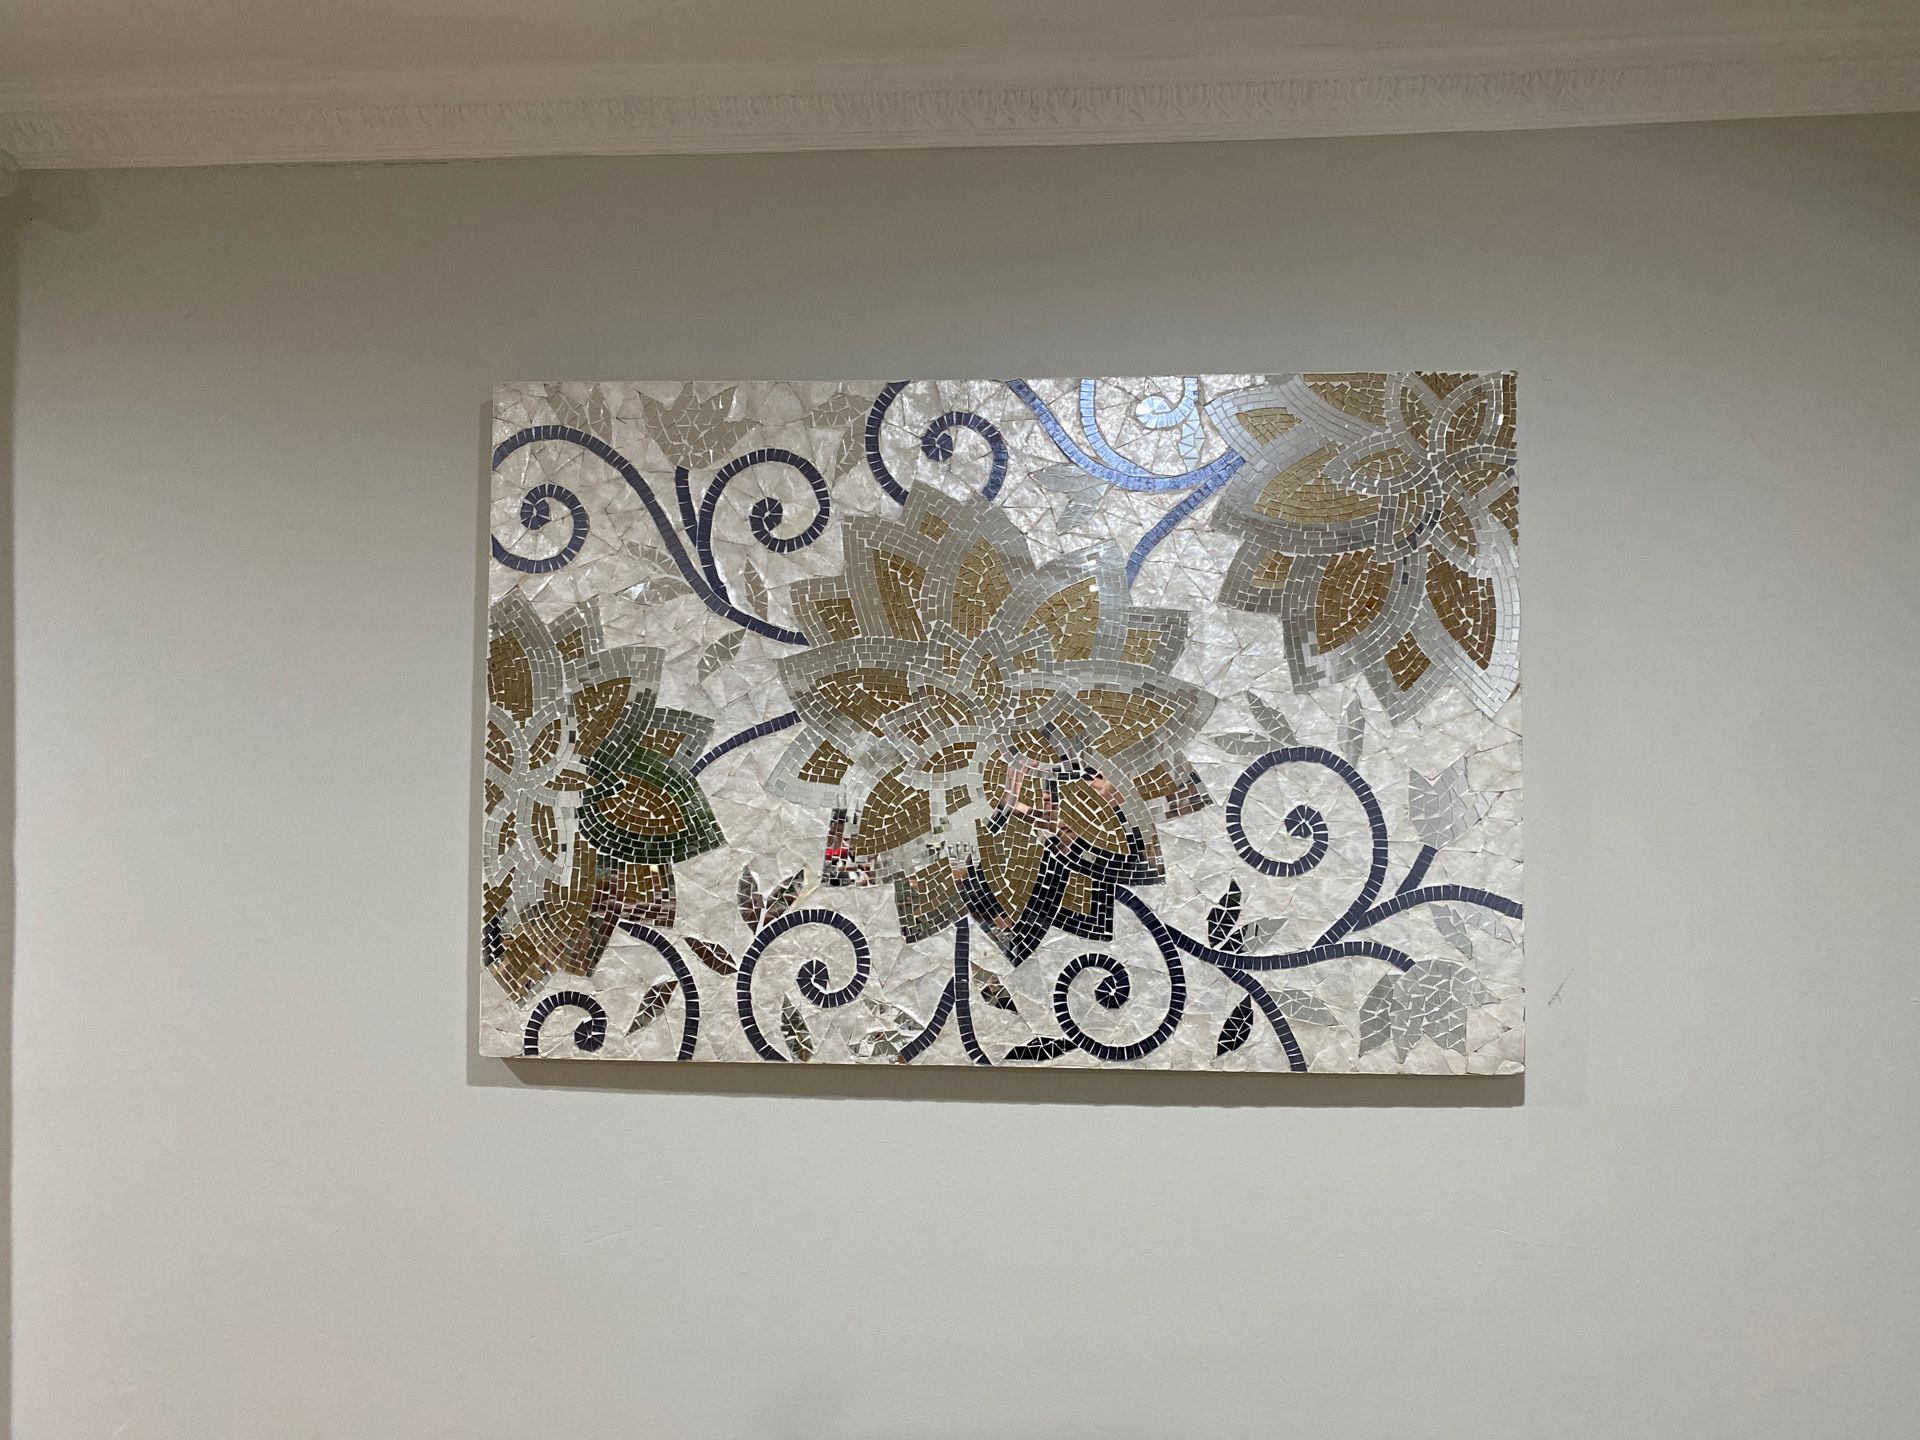 Large mosaic wall art piece